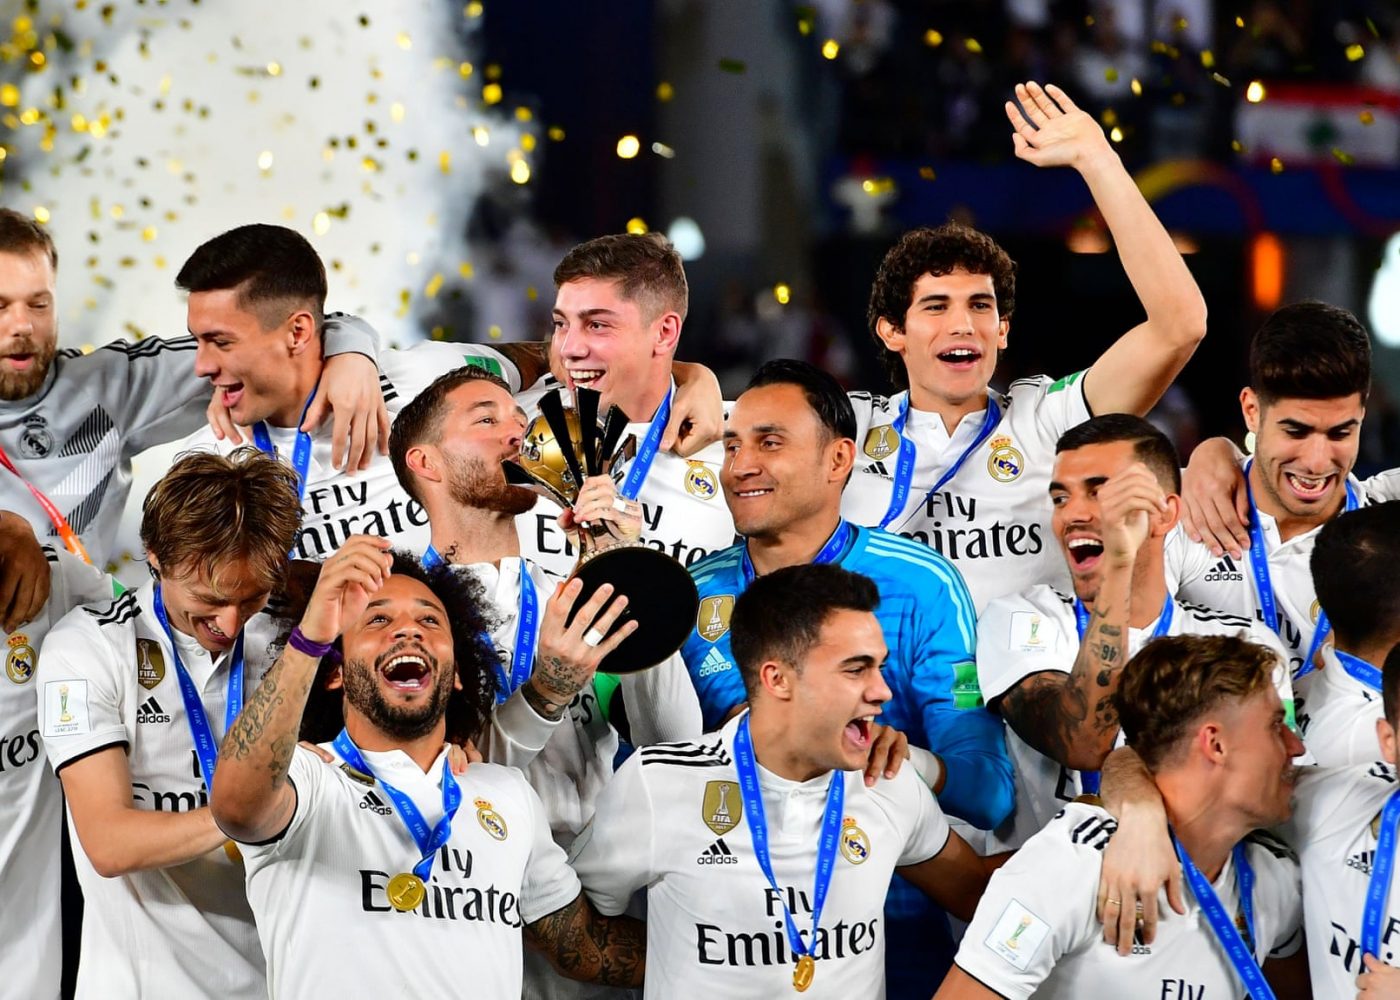 Top 5 đội bóng giành được nhiều danh hiệu FIFA Club World Cup nhất cho đến nay (tháng 2-2022)